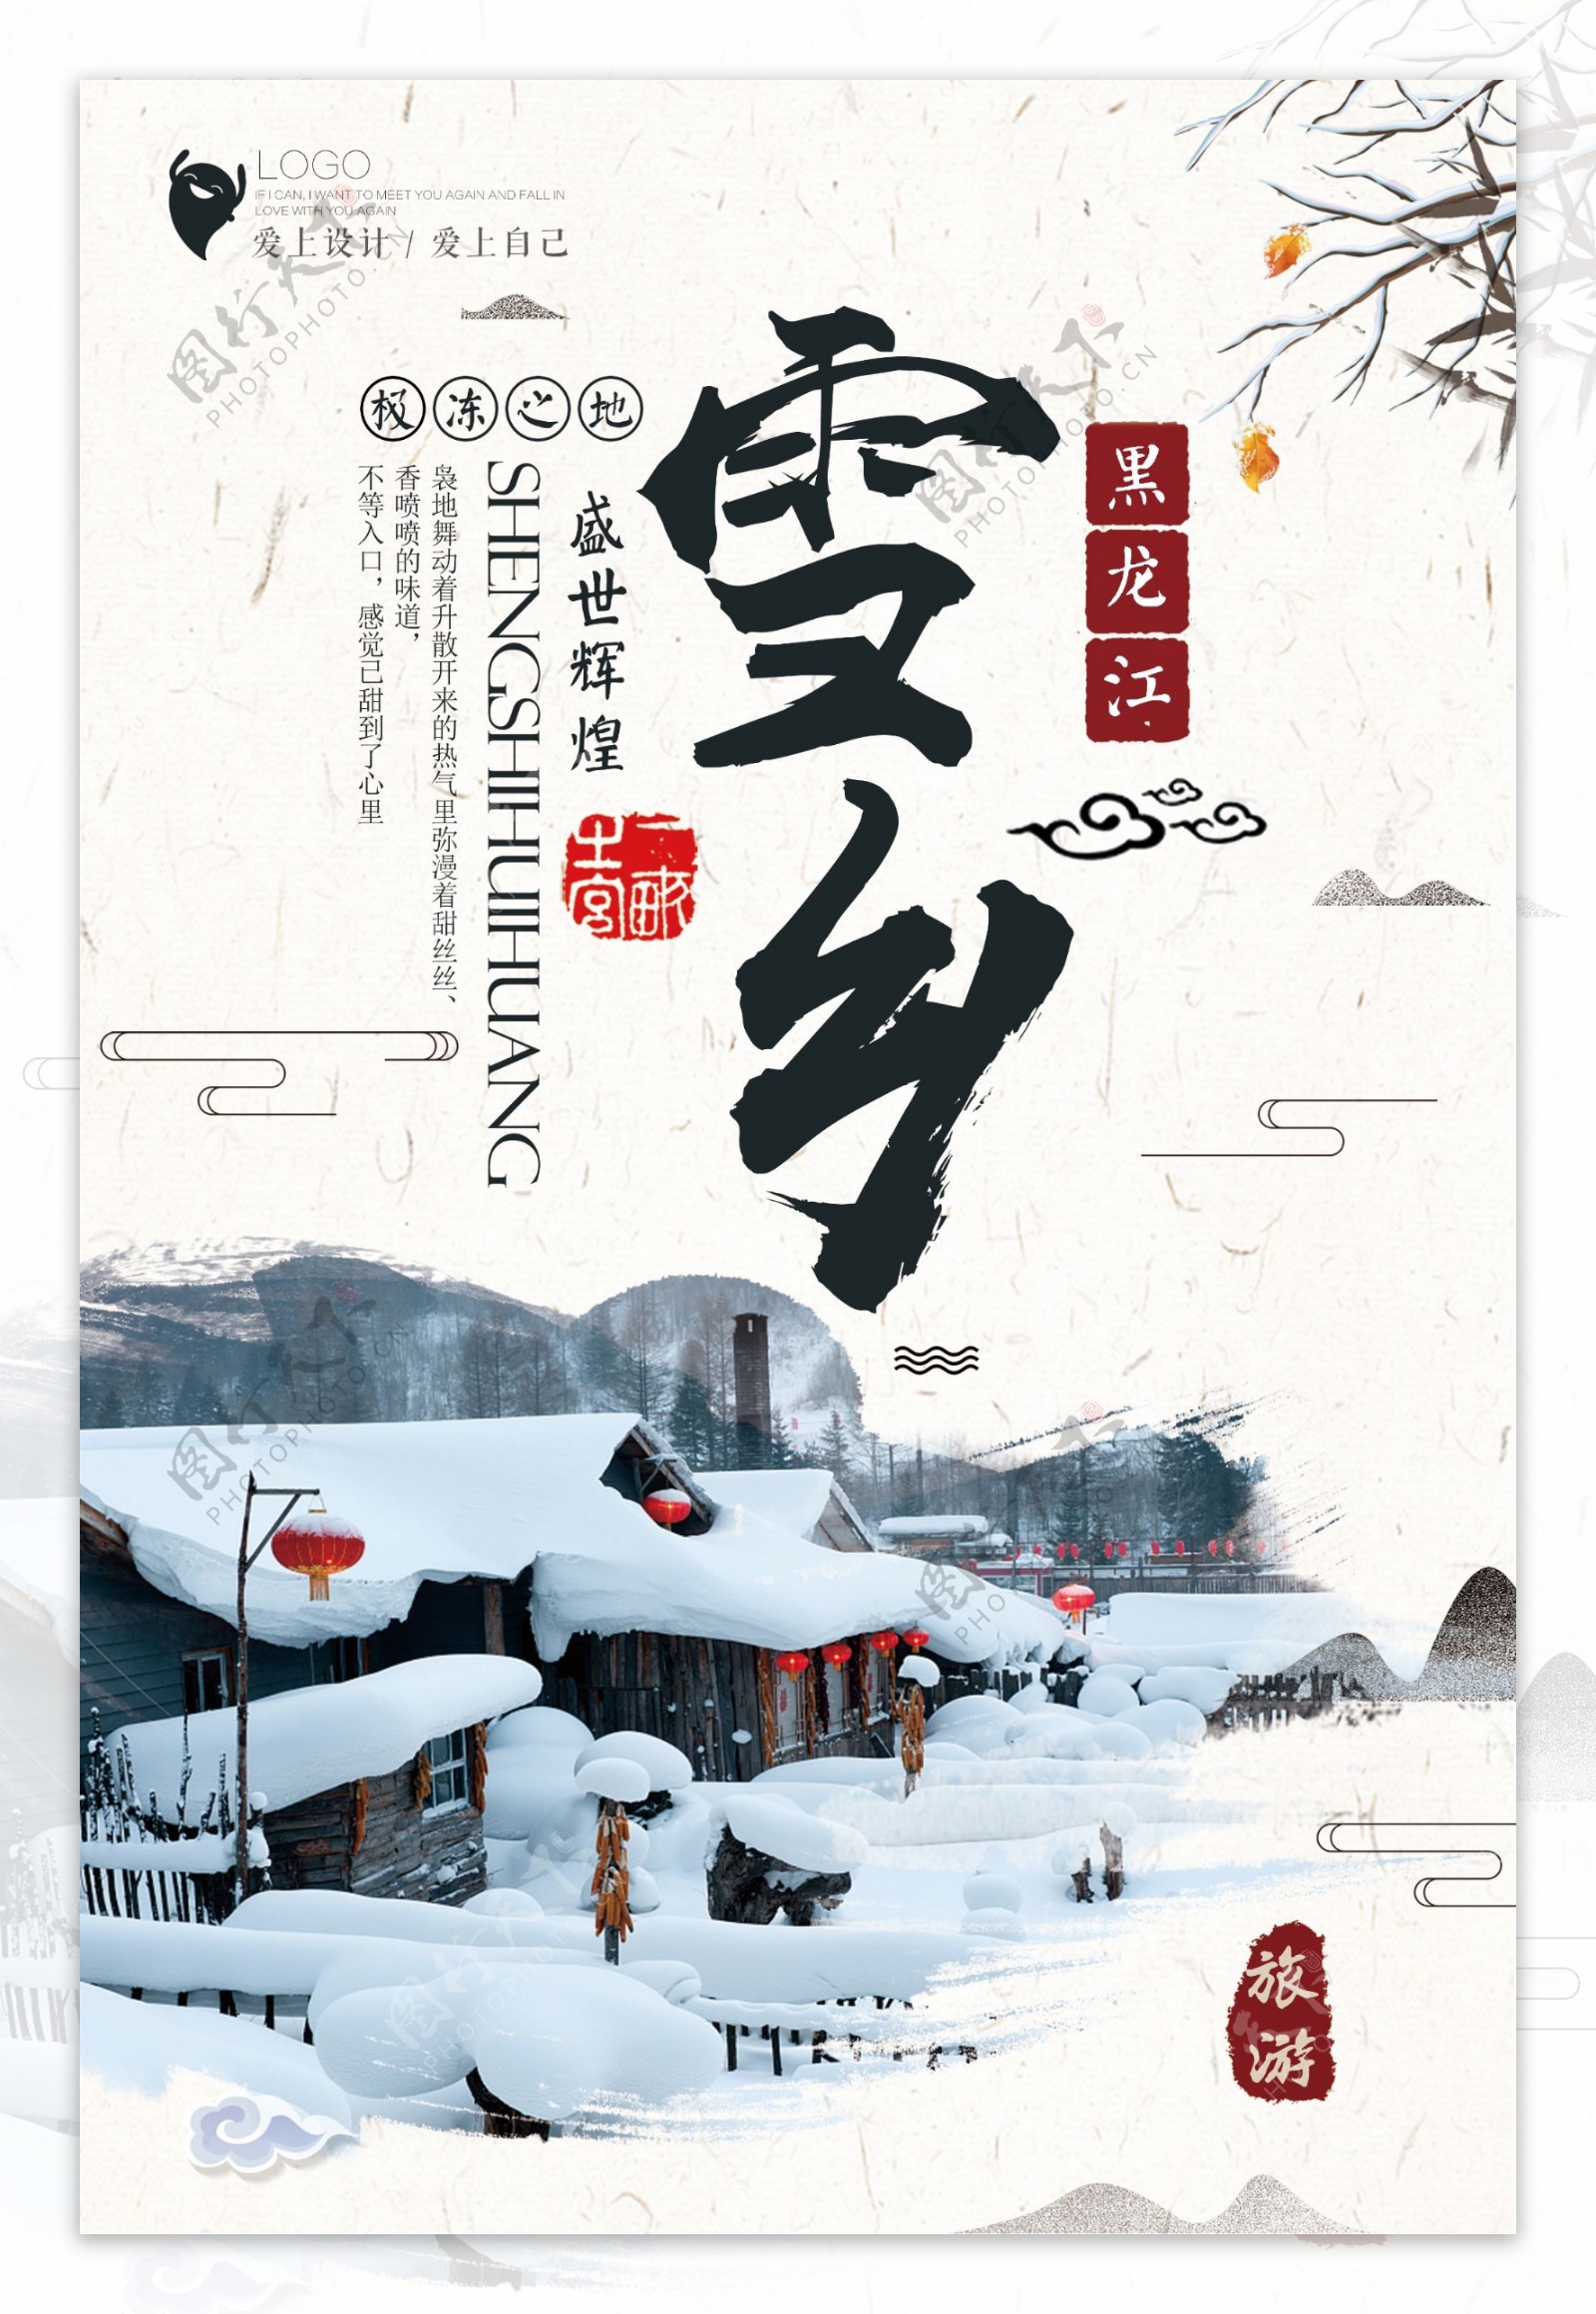 简洁黑龙江雪乡旅游海报设计